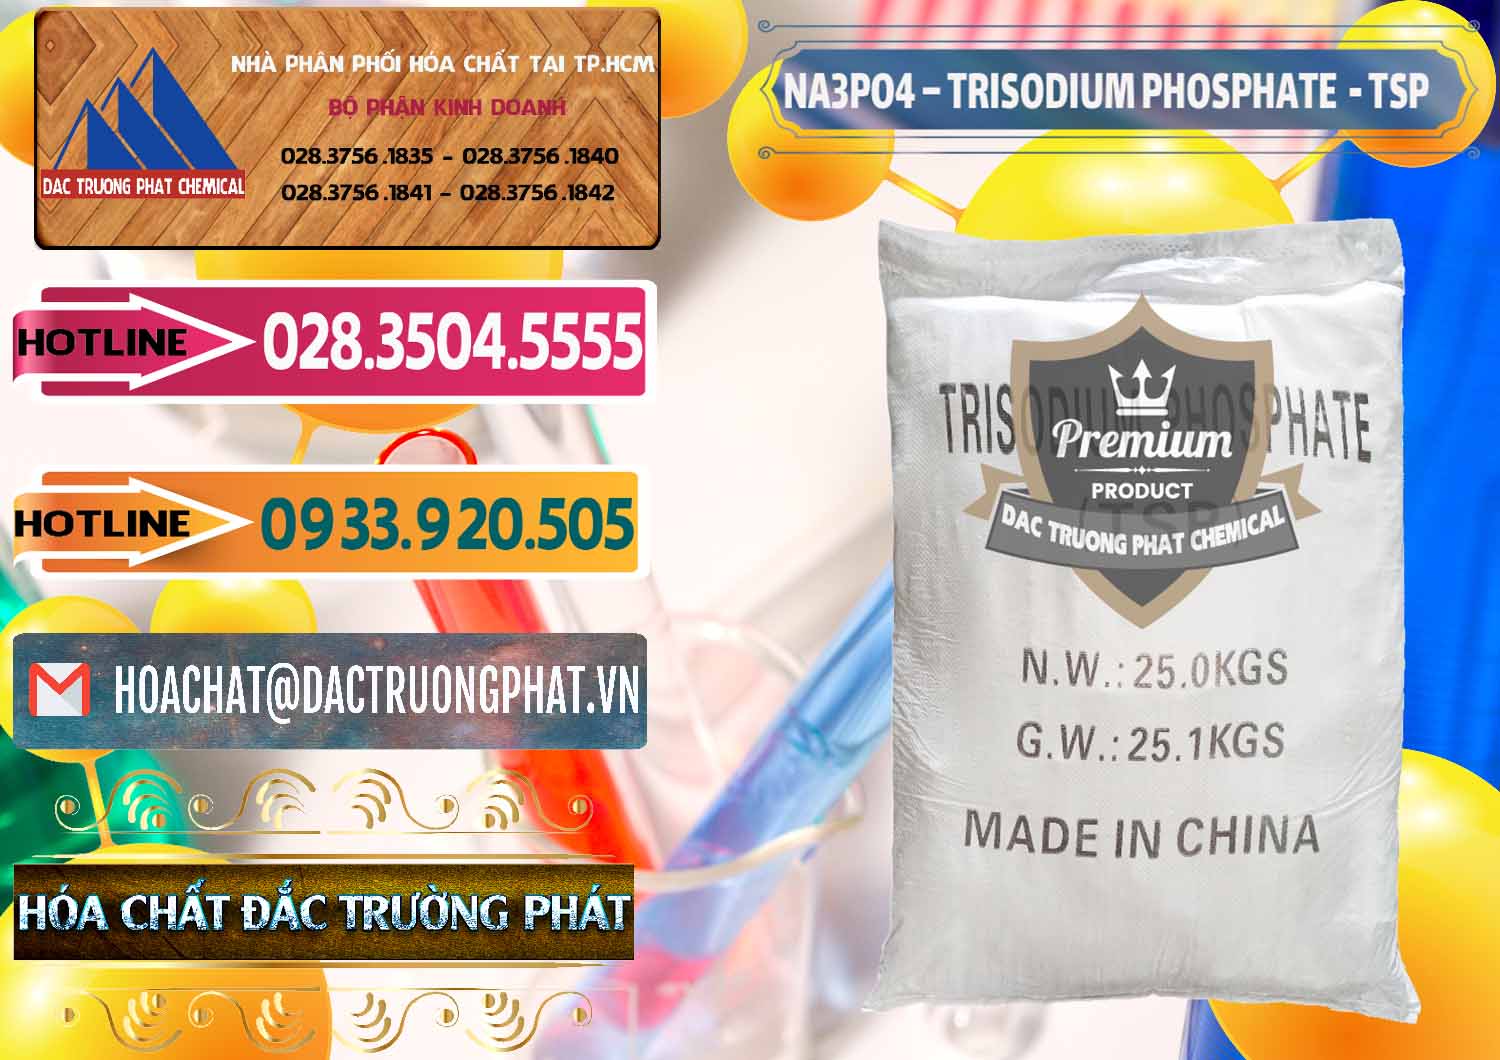 Cty chuyên kinh doanh - bán Na3PO4 – Trisodium Phosphate Trung Quốc China TSP - 0103 - Nơi chuyên nhập khẩu và cung cấp hóa chất tại TP.HCM - dactruongphat.vn